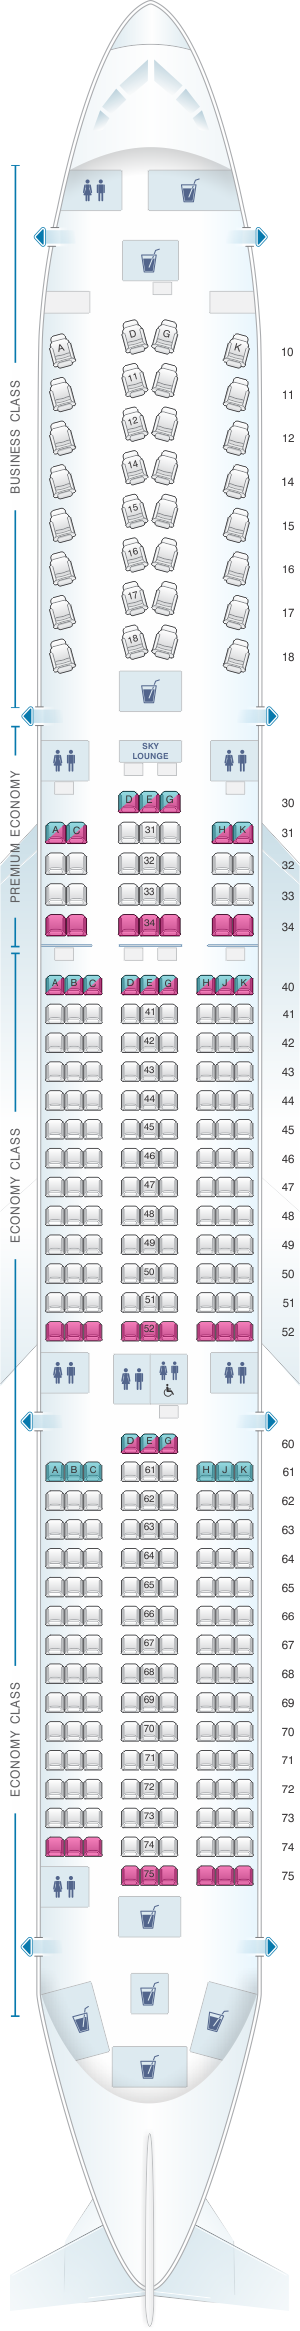 China Air Seating Chart